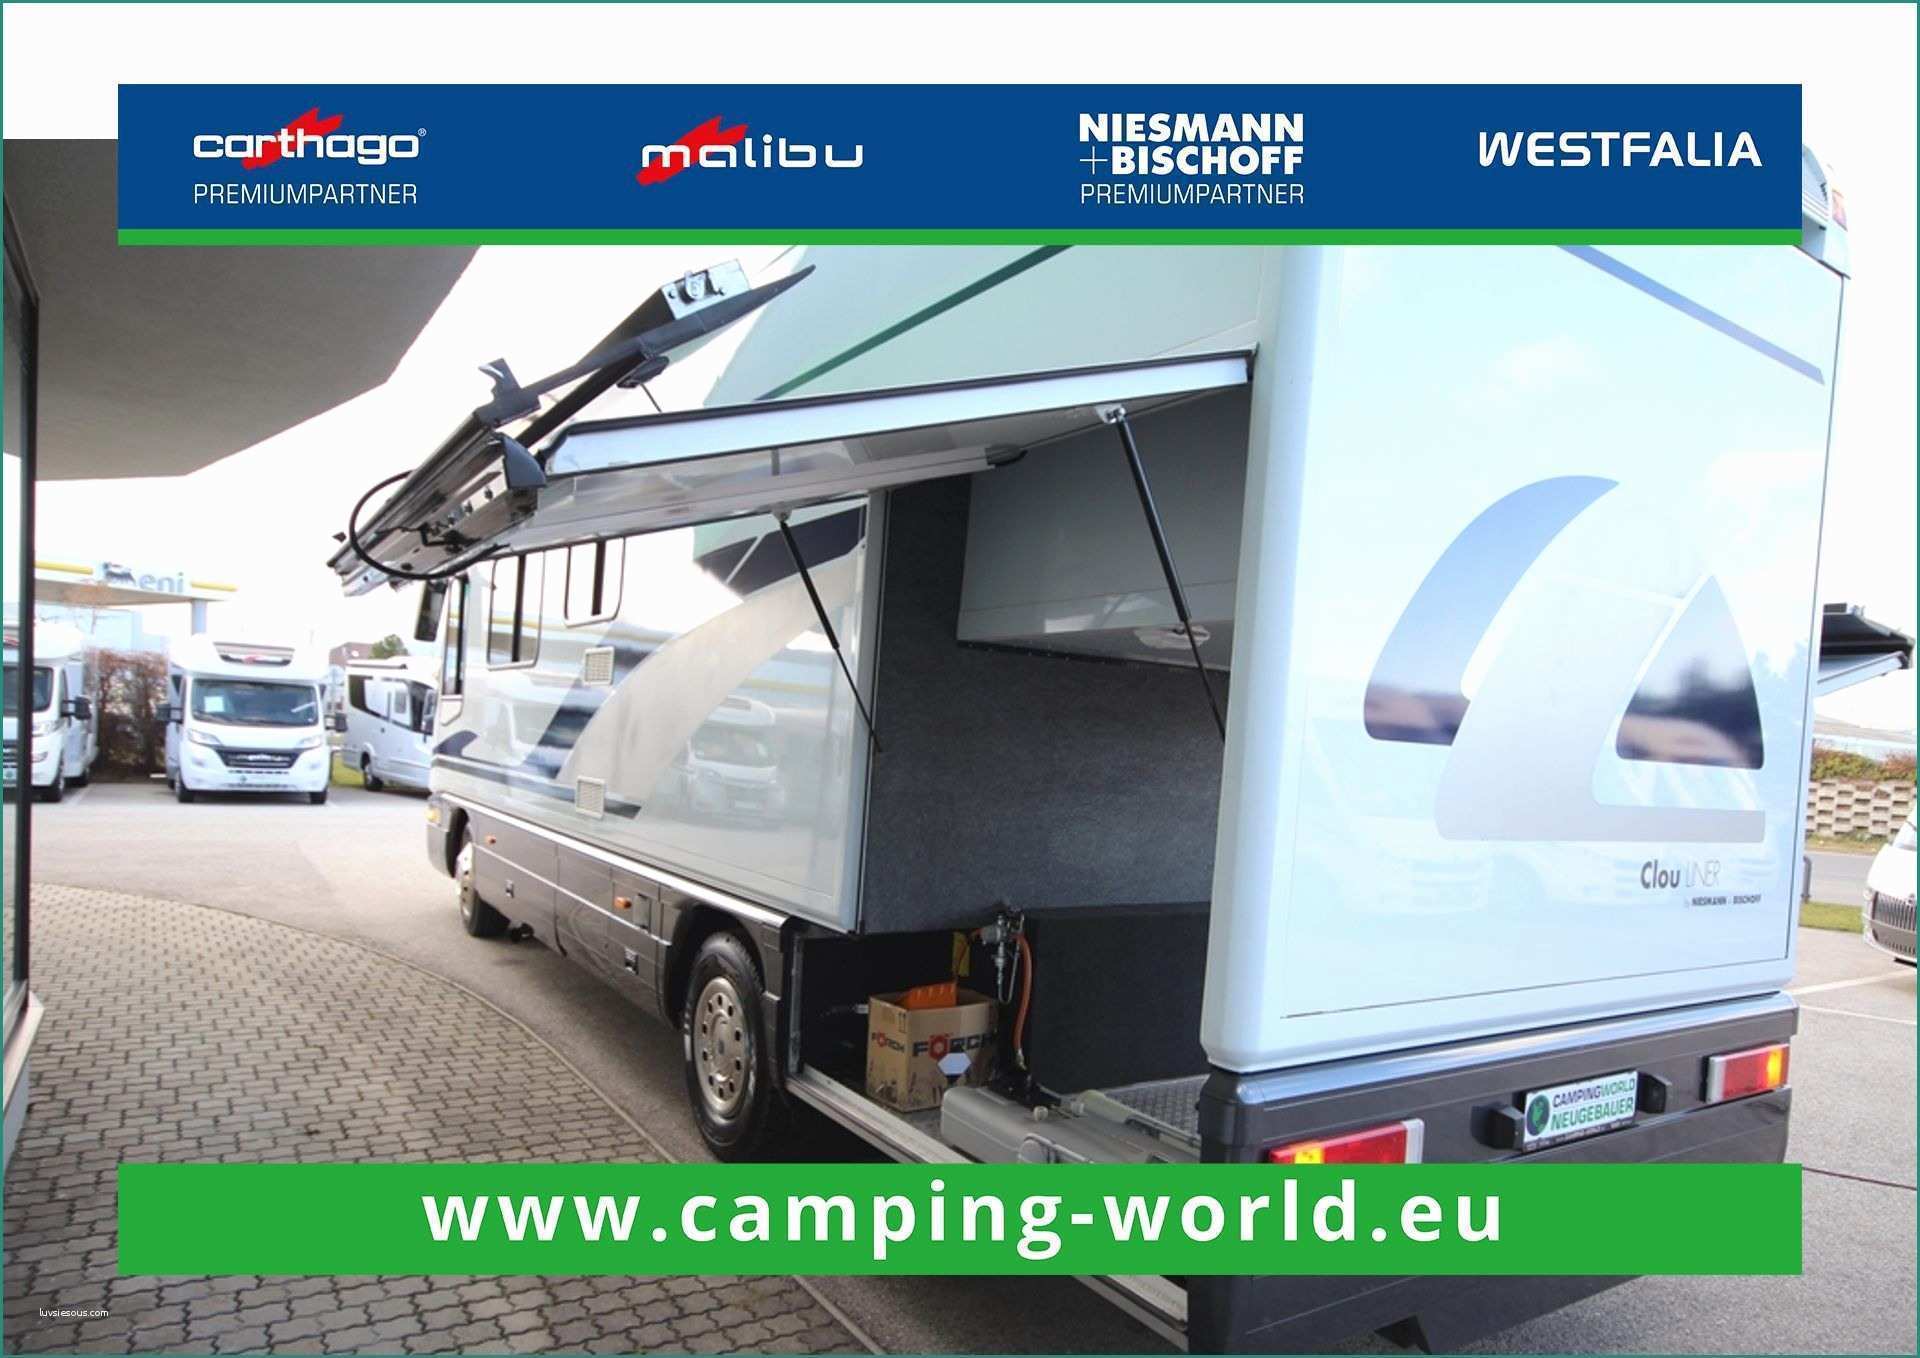 Iveco Daily X Camper Usato E Niesmann Bischoff Clou 900 B Campingworld Neugebauer